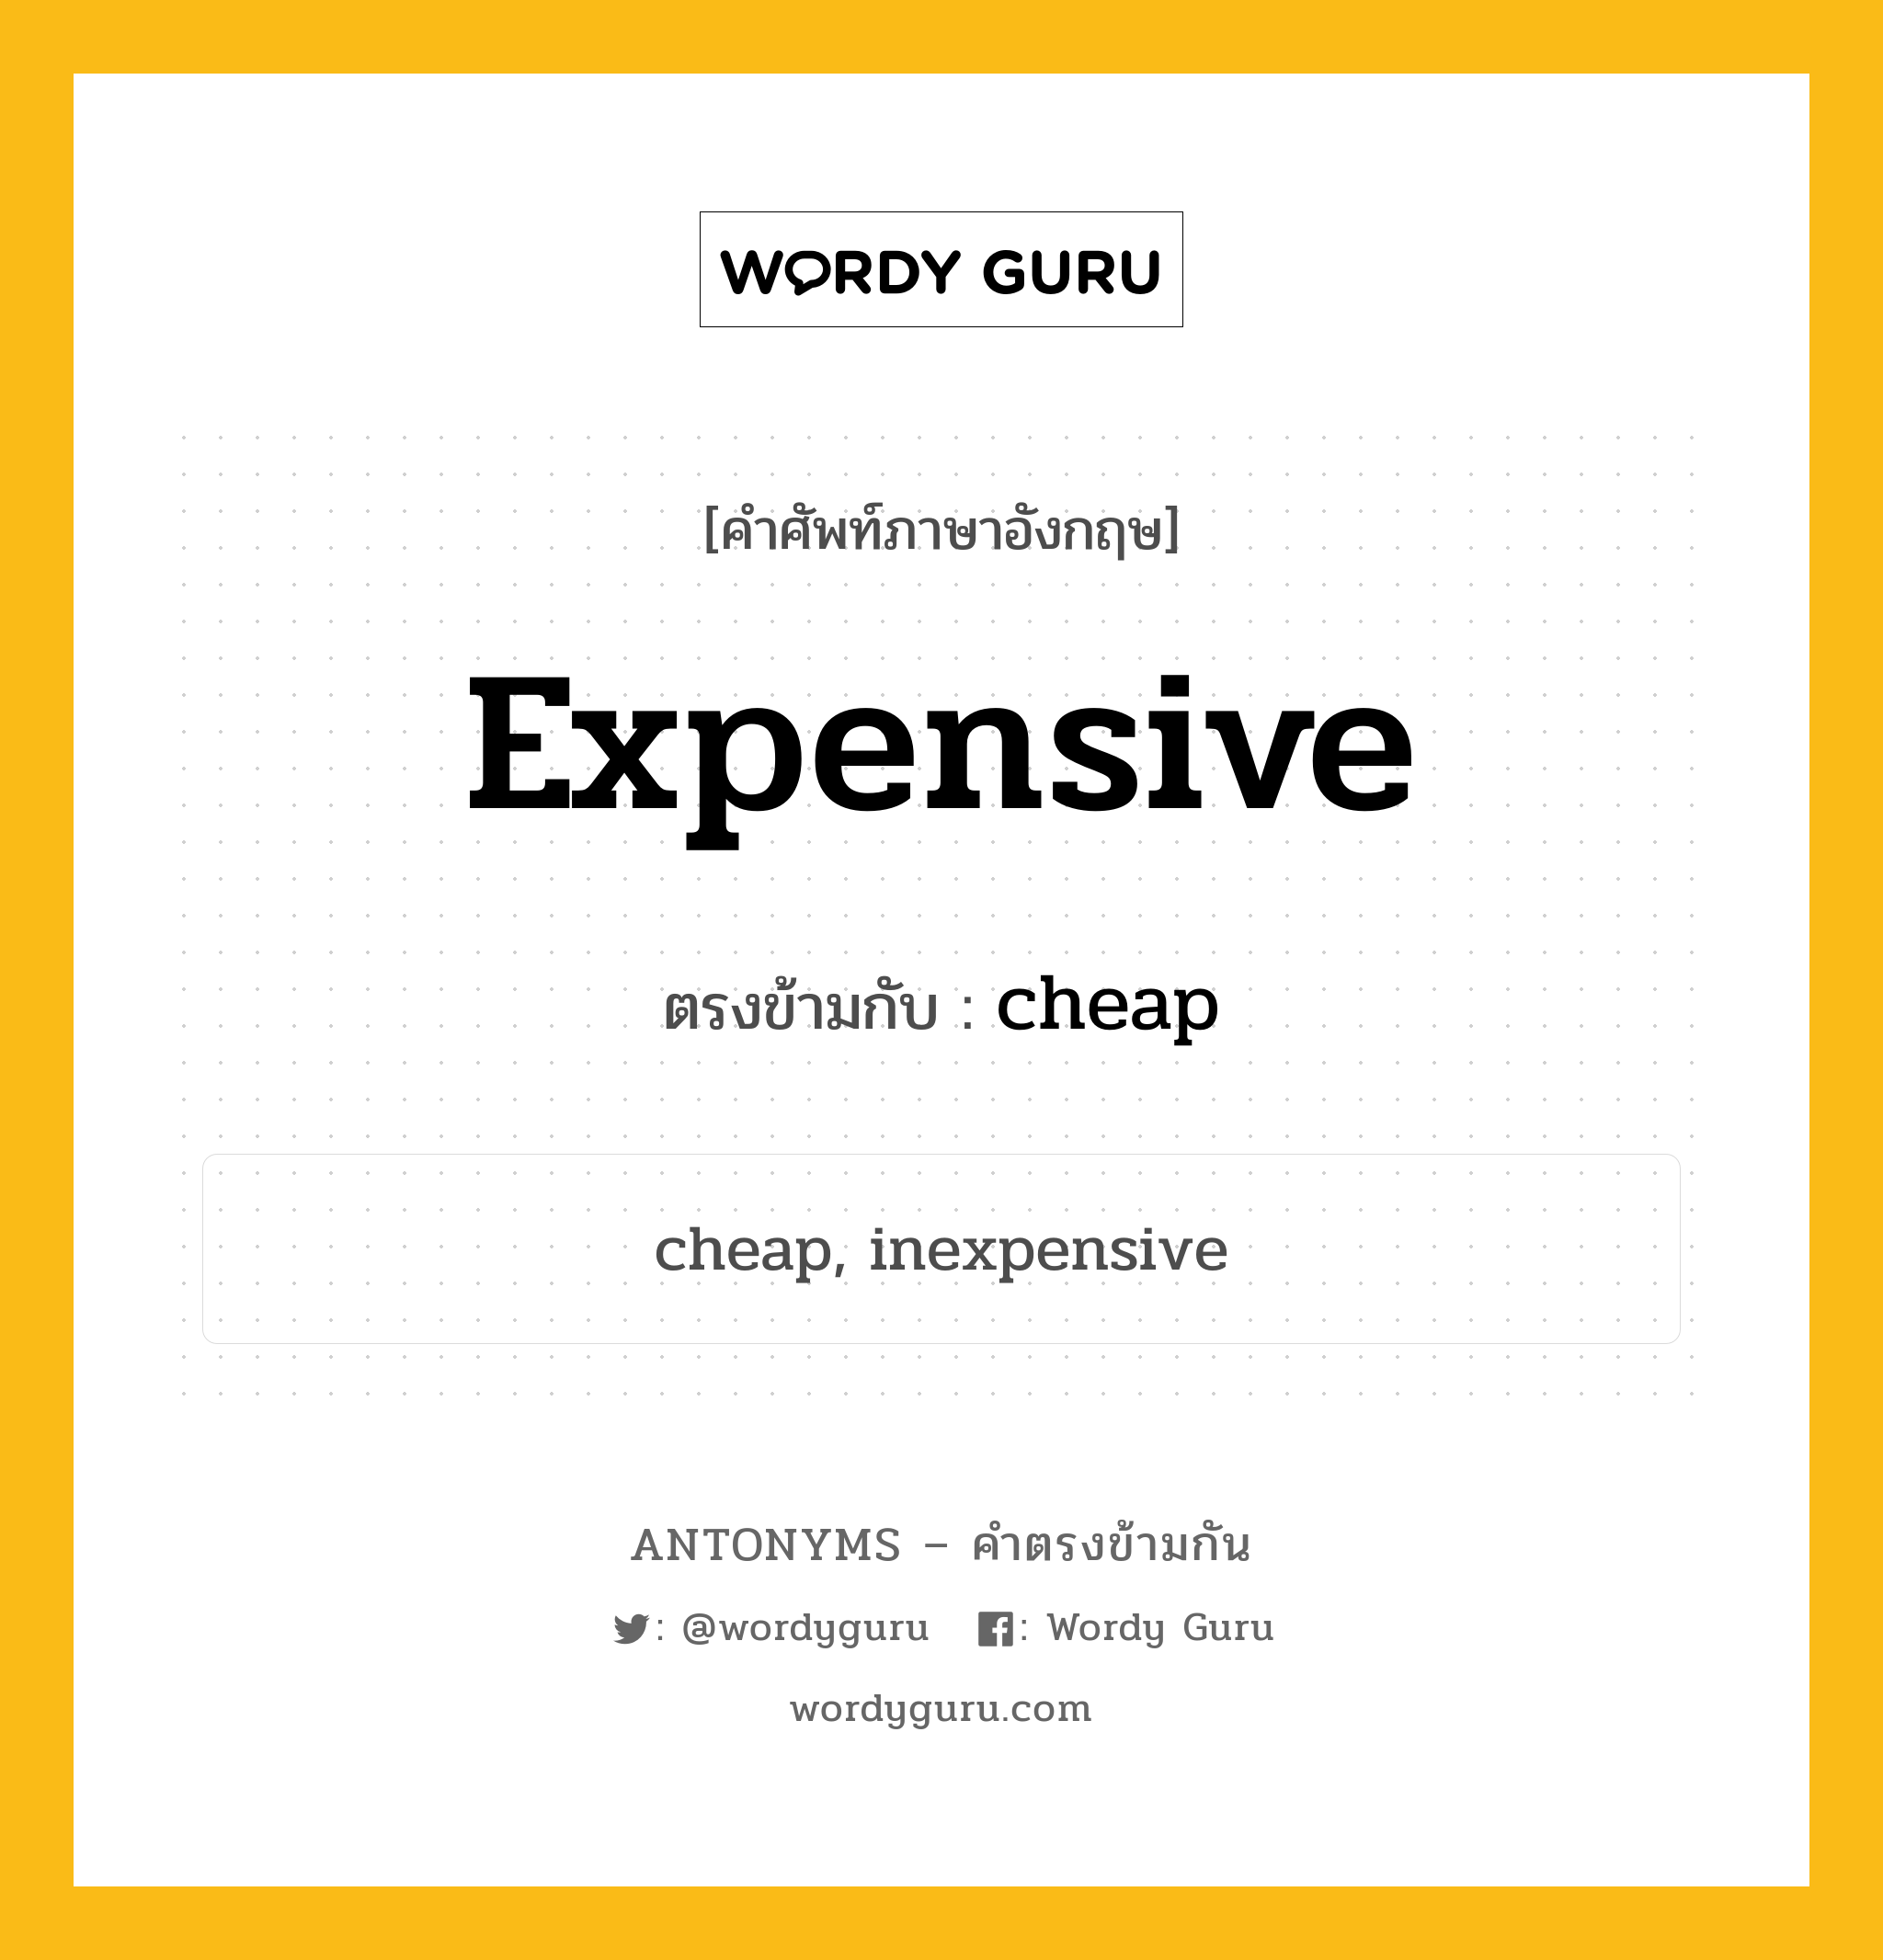 expensive เป็นคำตรงข้ามกับคำไหนบ้าง?, คำศัพท์ภาษาอังกฤษ expensive ตรงข้ามกับ cheap หมวด cheap